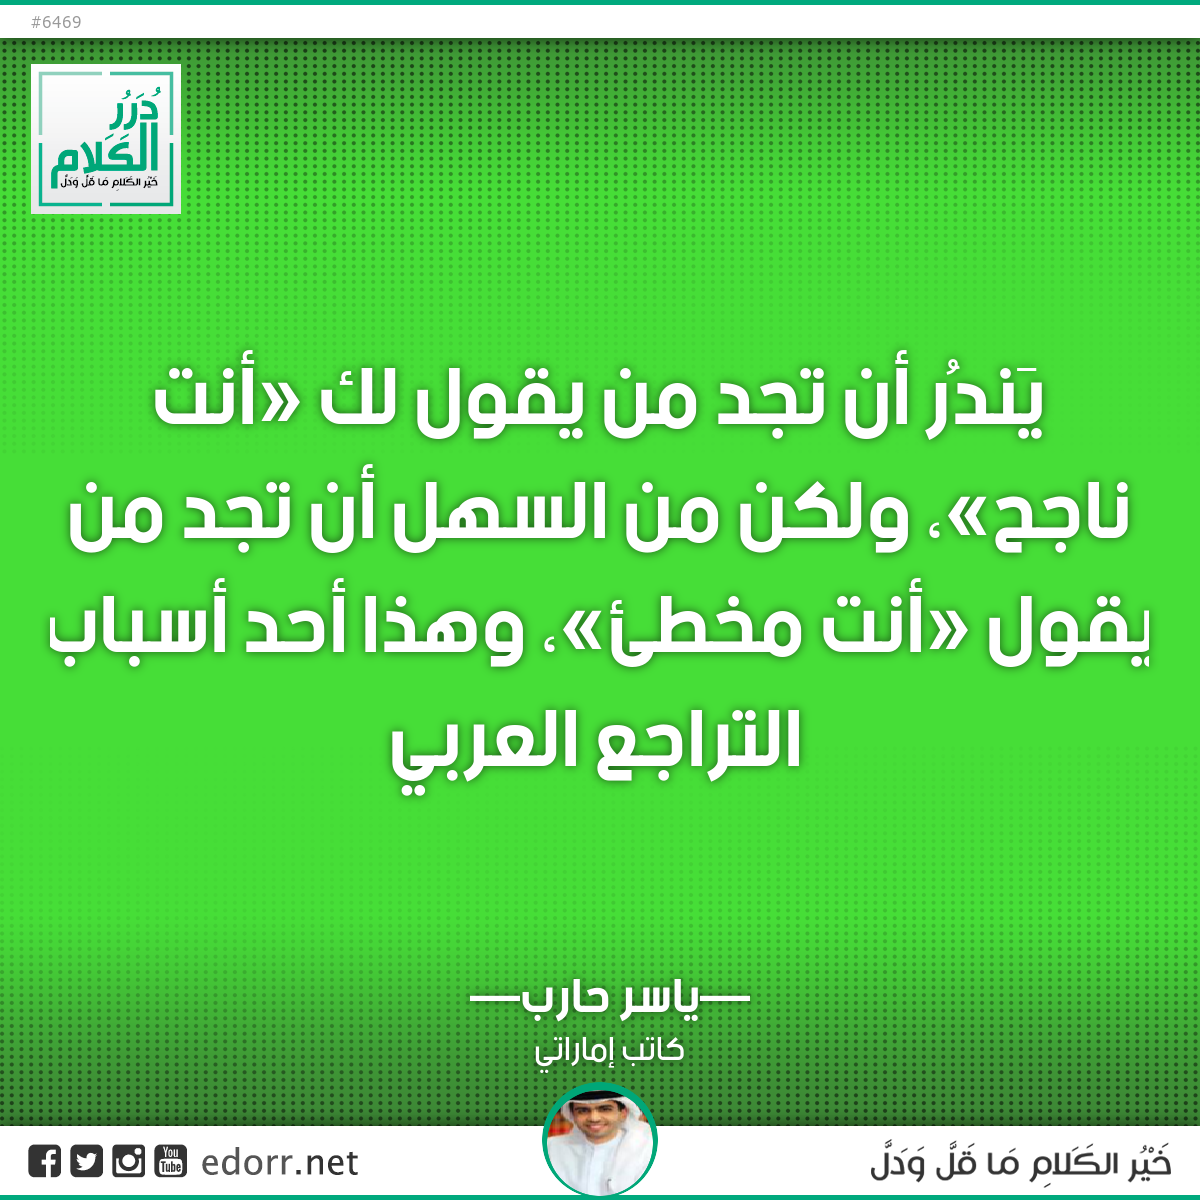 يَندُر أن تجد من يقول لك «أنت ناجح»، ولكن من السهل أن تجد من يقول «أنت مخطئ»، وهذا أحد أسباب التراجع العربي.